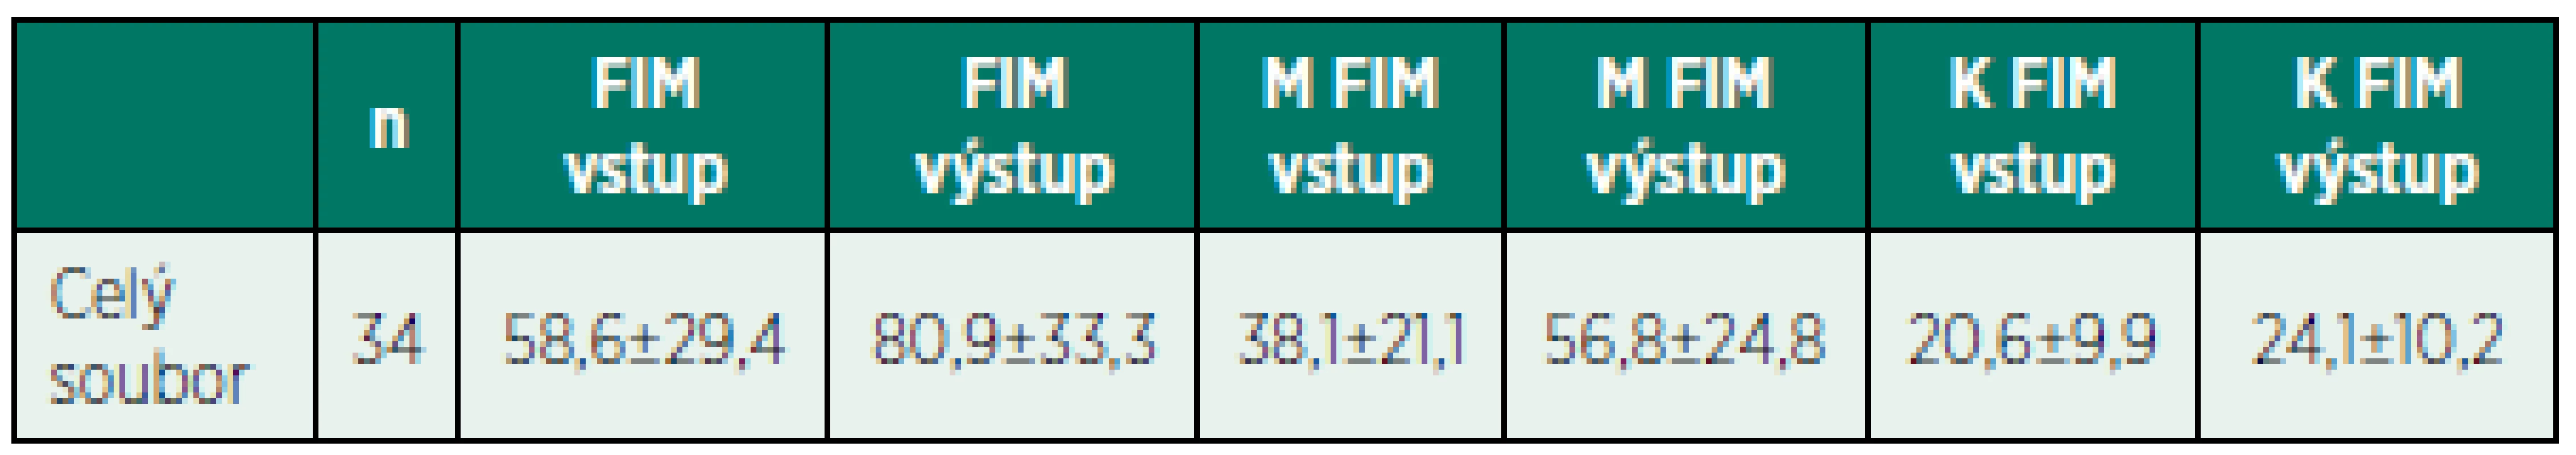 Vstupní a výstupní hodnoty FIM testu, M FIM a K FIM skóre u celého souboru pacientů.